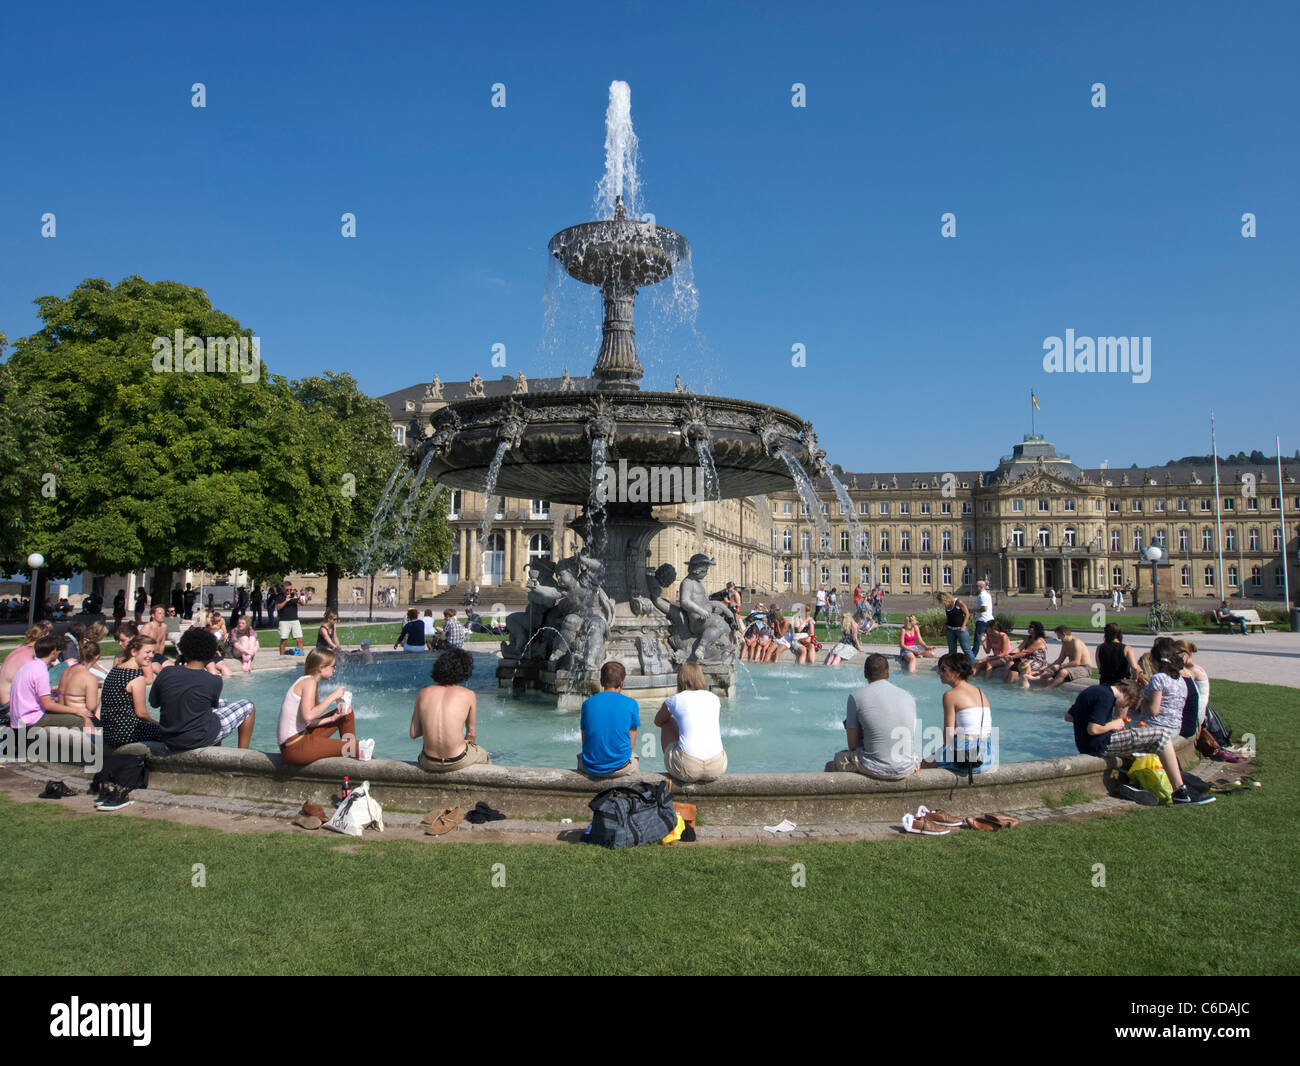 Busy summer afternoon on Schlossplatz in Stuttgart in Germany Stock Photo